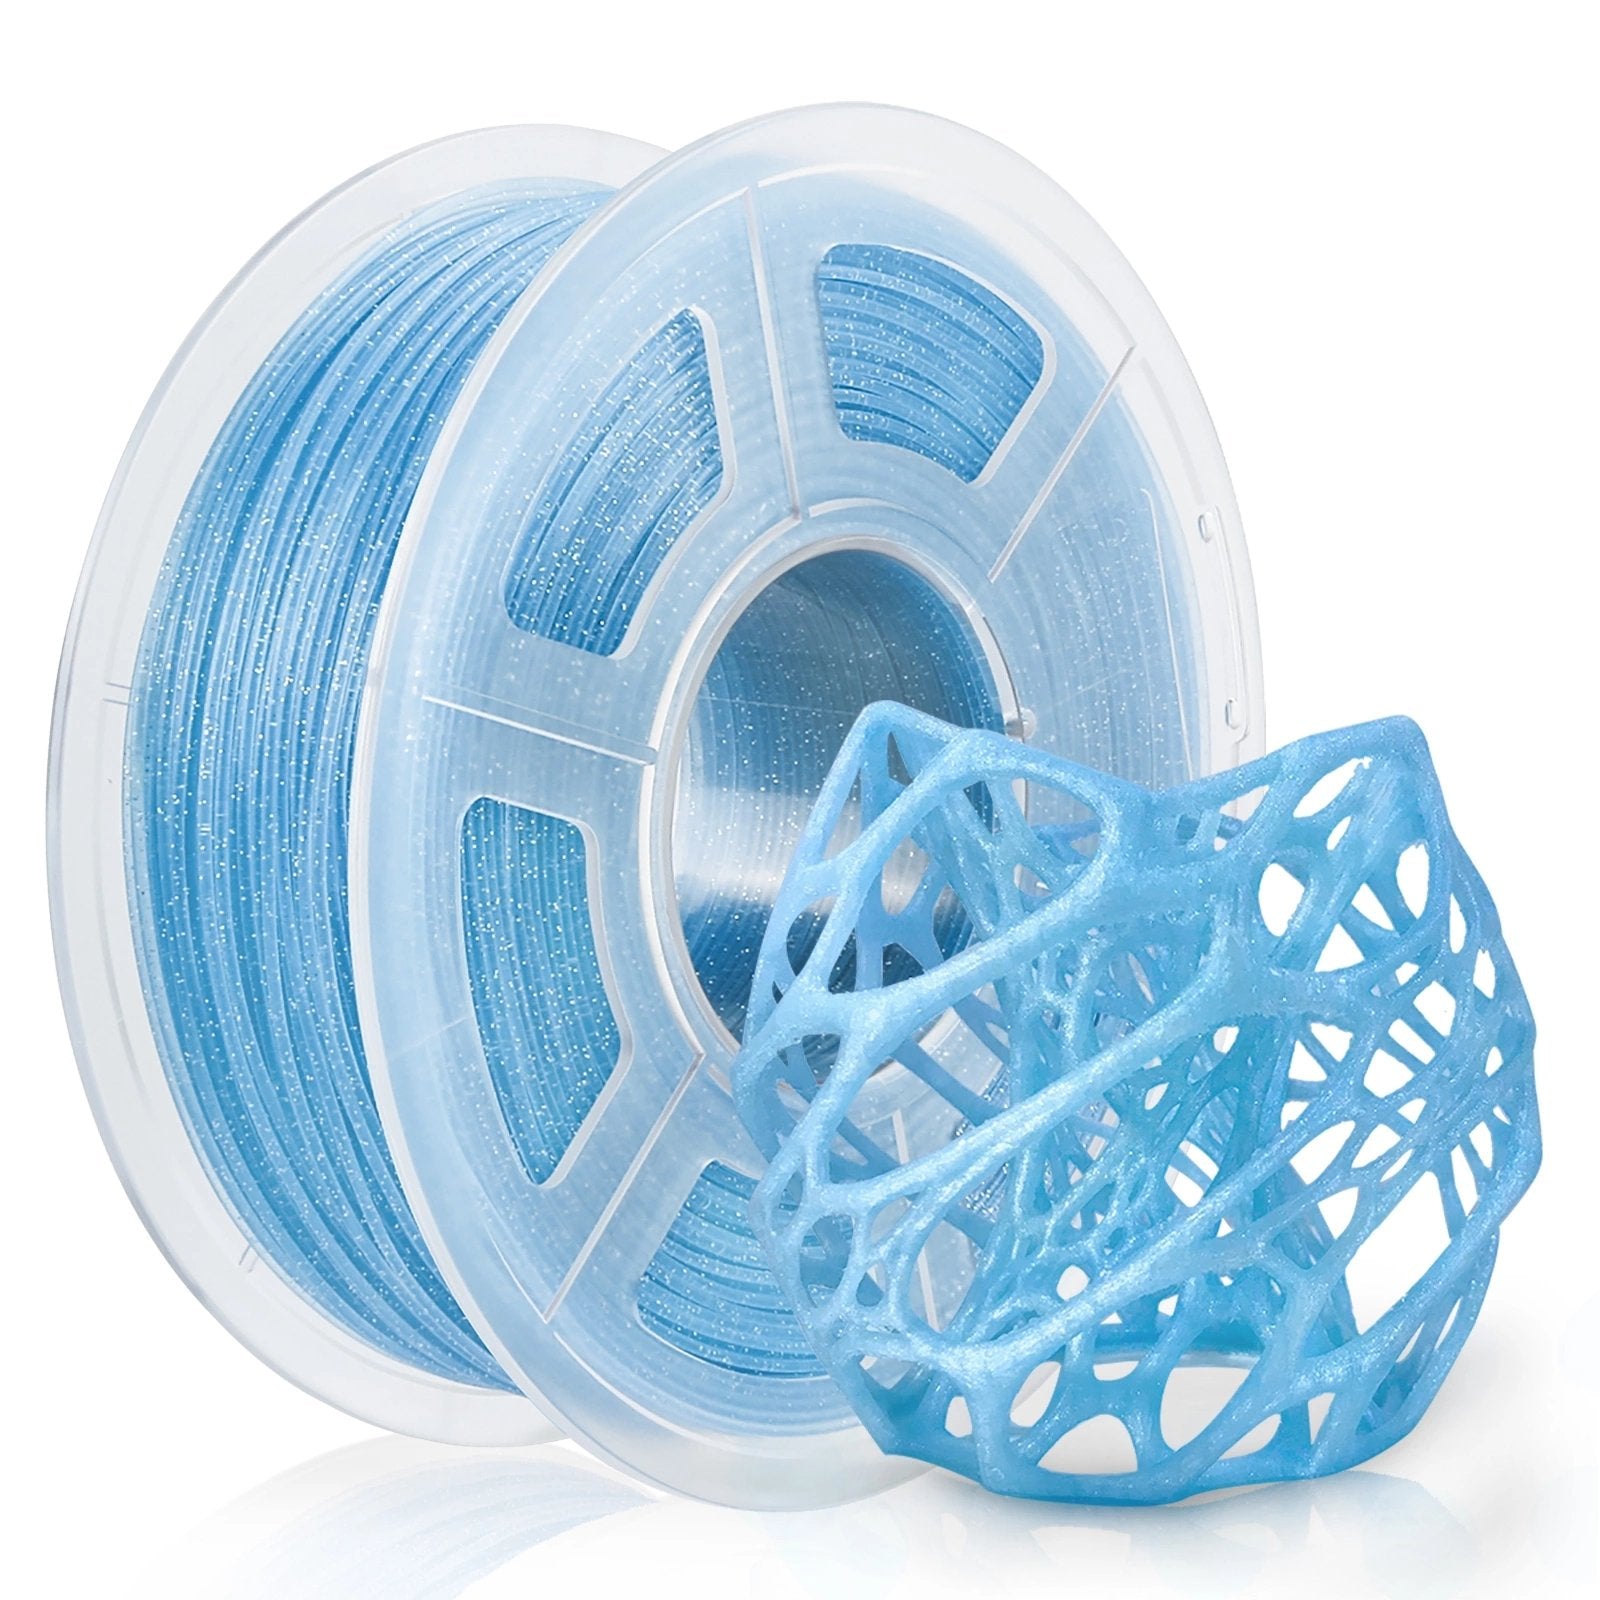 AMOLEN PLA 3D Printer Filament,PLA Filament 1.75mm,Silk Shiny Filament  Bundle, Red Gold,Blue Silver, Red Silver,Blue Green, 3D Printing Filament